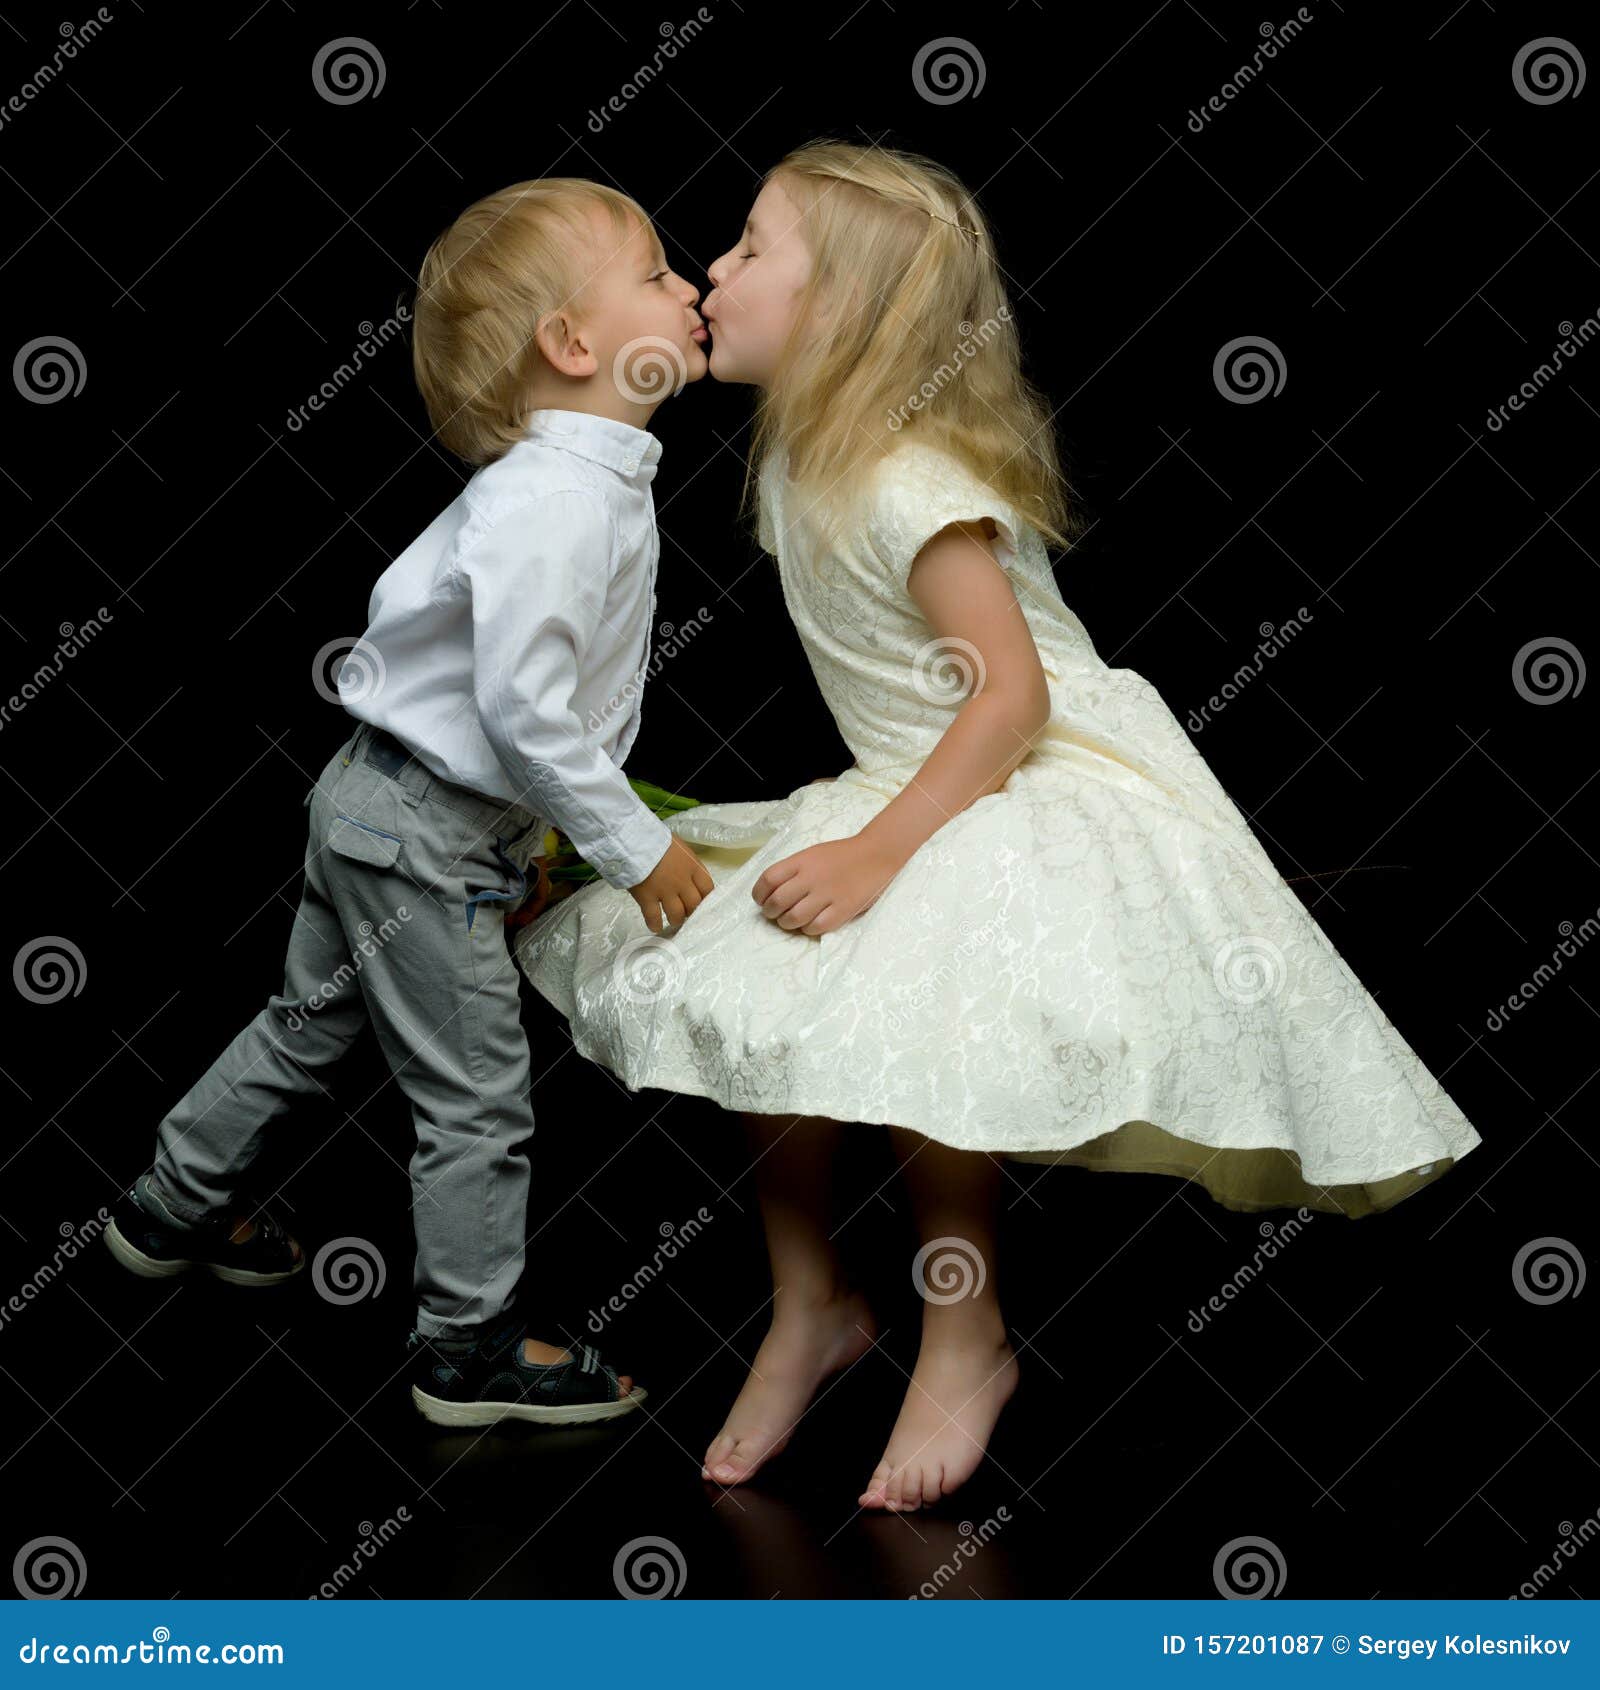 Покажи девочки мальчики поцелуют. Мальчик целует девочку. Поцелуй мальчика и девочки 10 лет. Мальчик целует мальчика. Поцелуй мальчика и девочки 12 лет.